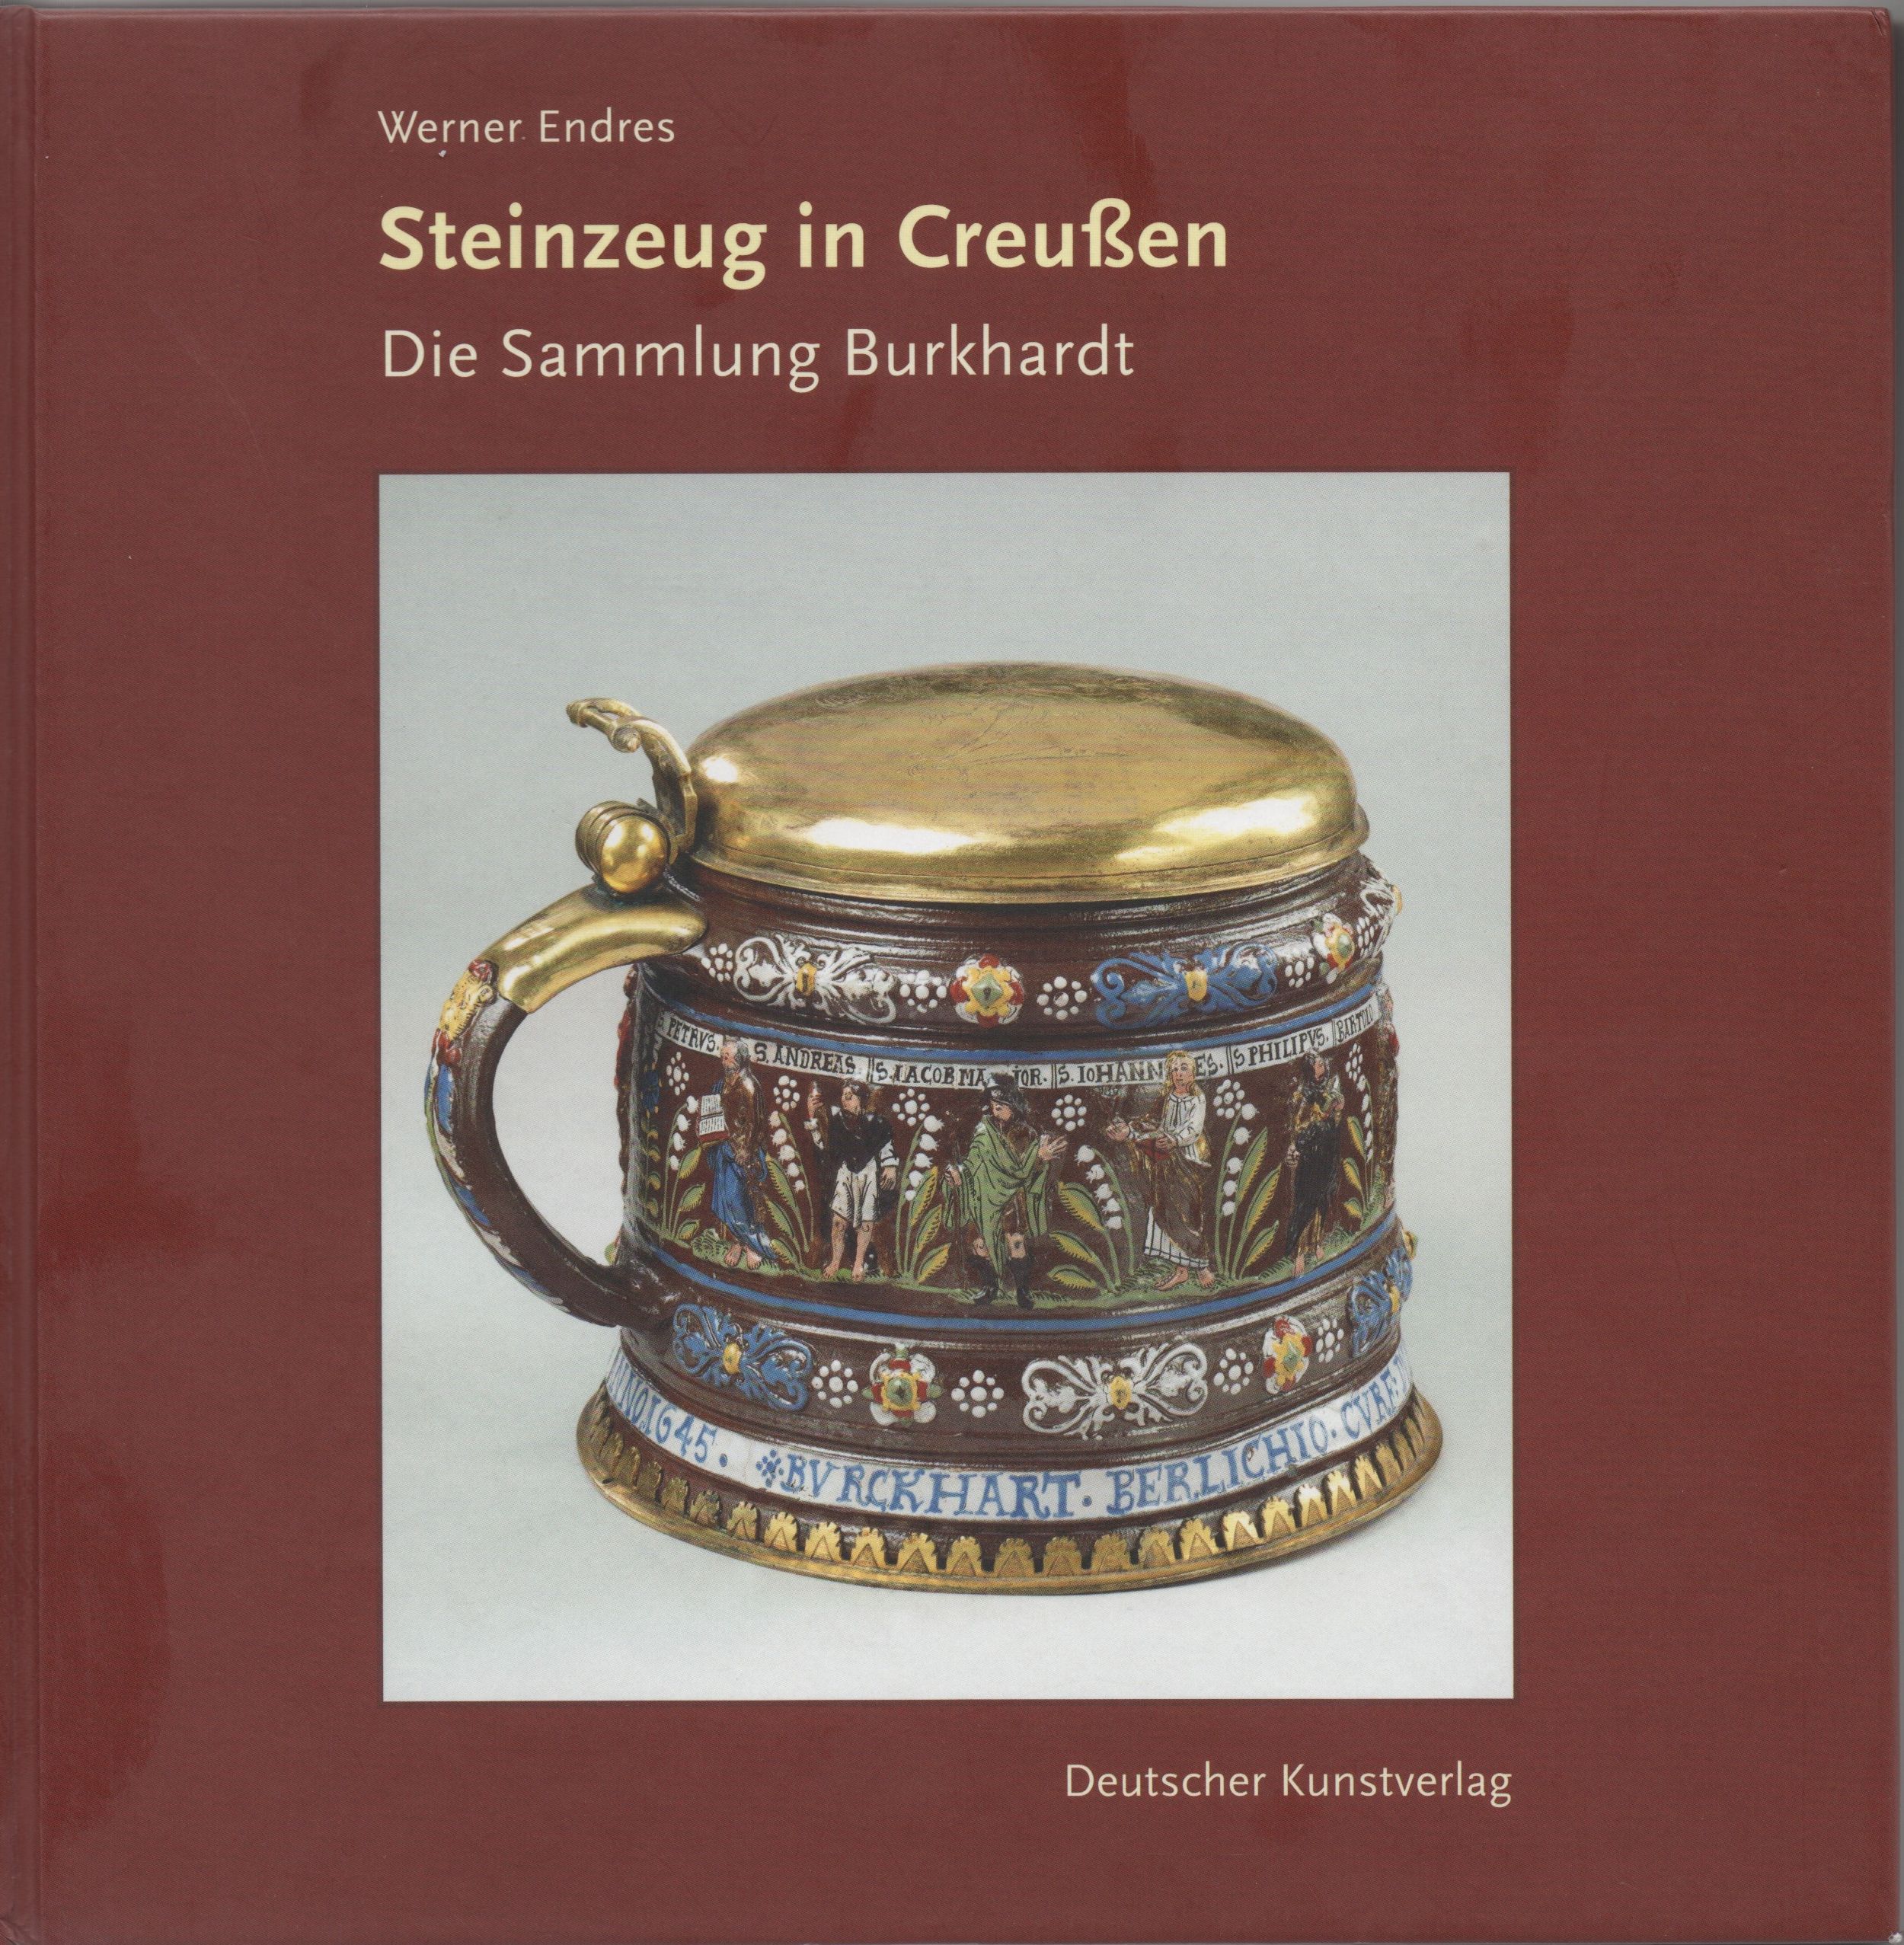 Seinzeug in Creußen - Die Sammlung Burkardt Autor: Werner Endres Deutscher Kunstverlag 2009